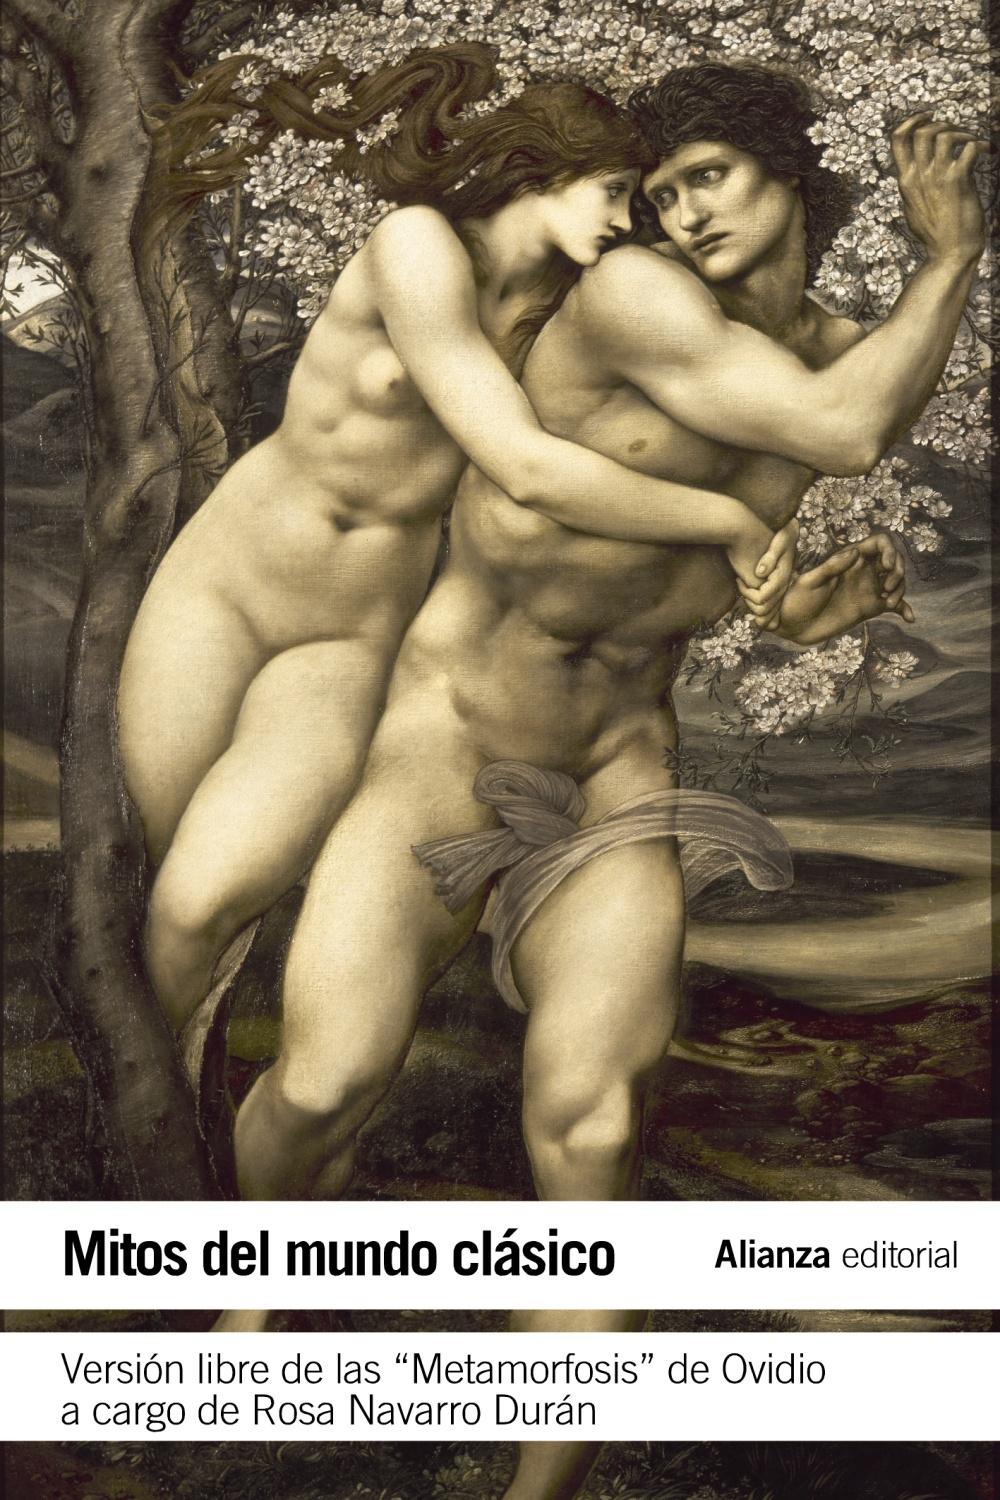 Mitos del mundo clásico "versión libre de las Metamorfosis de Ovidio"